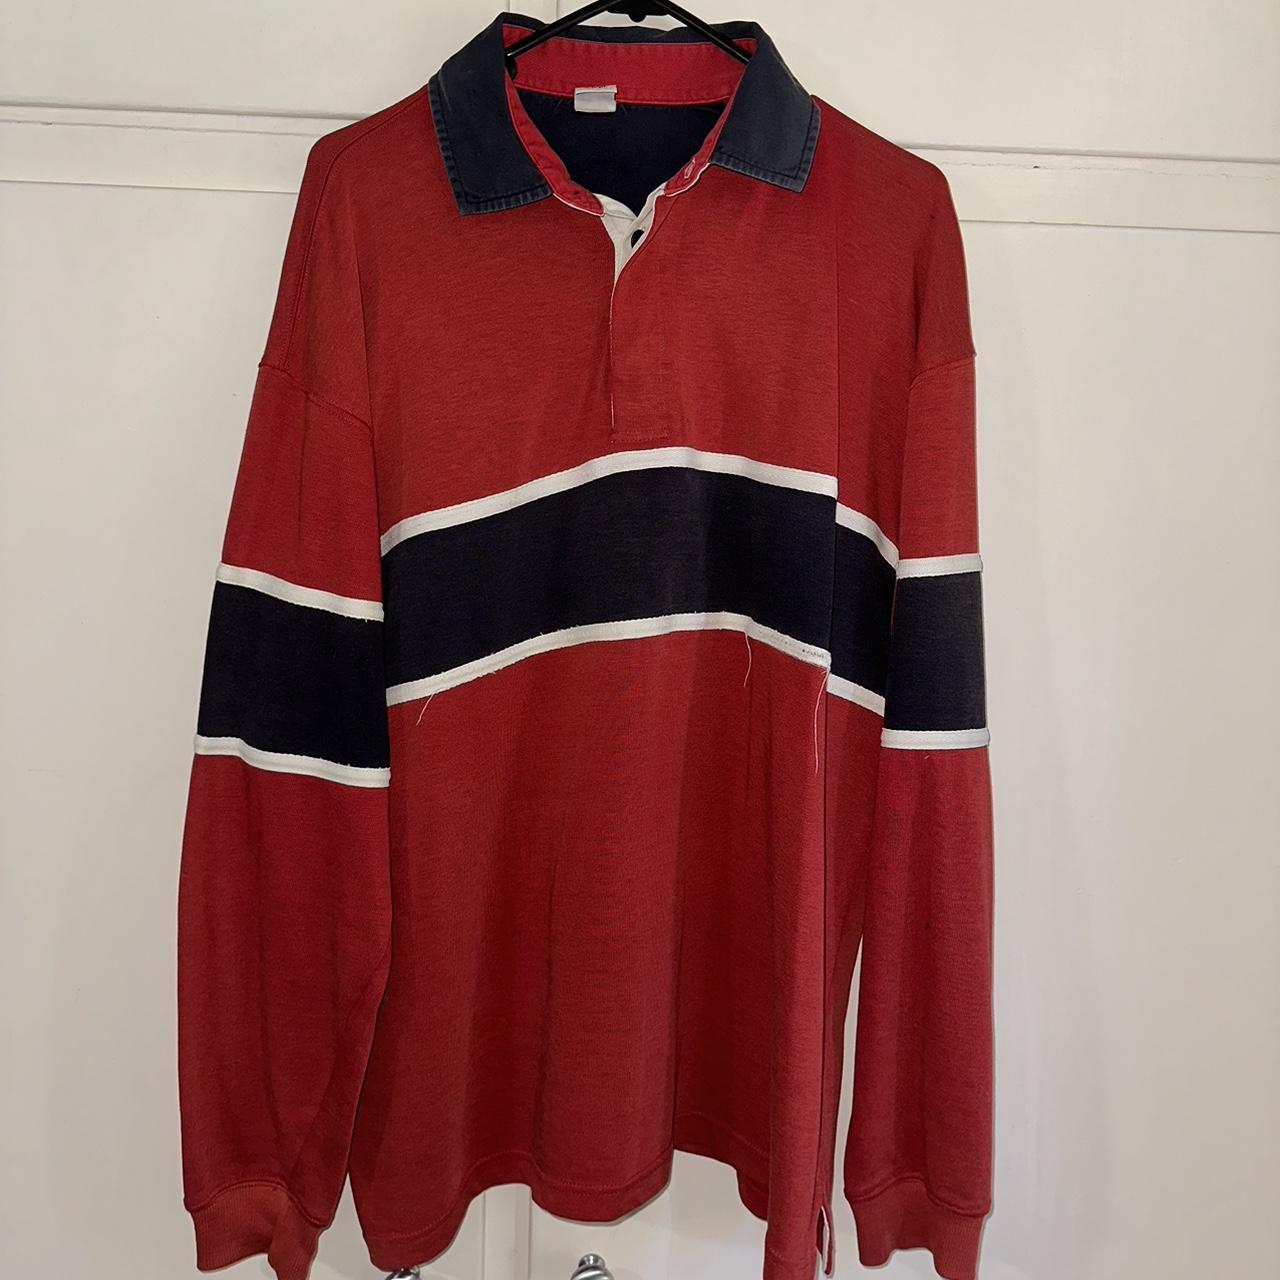 Vintage Target rugby jumper 🍒 Size medium, quite an... - Depop